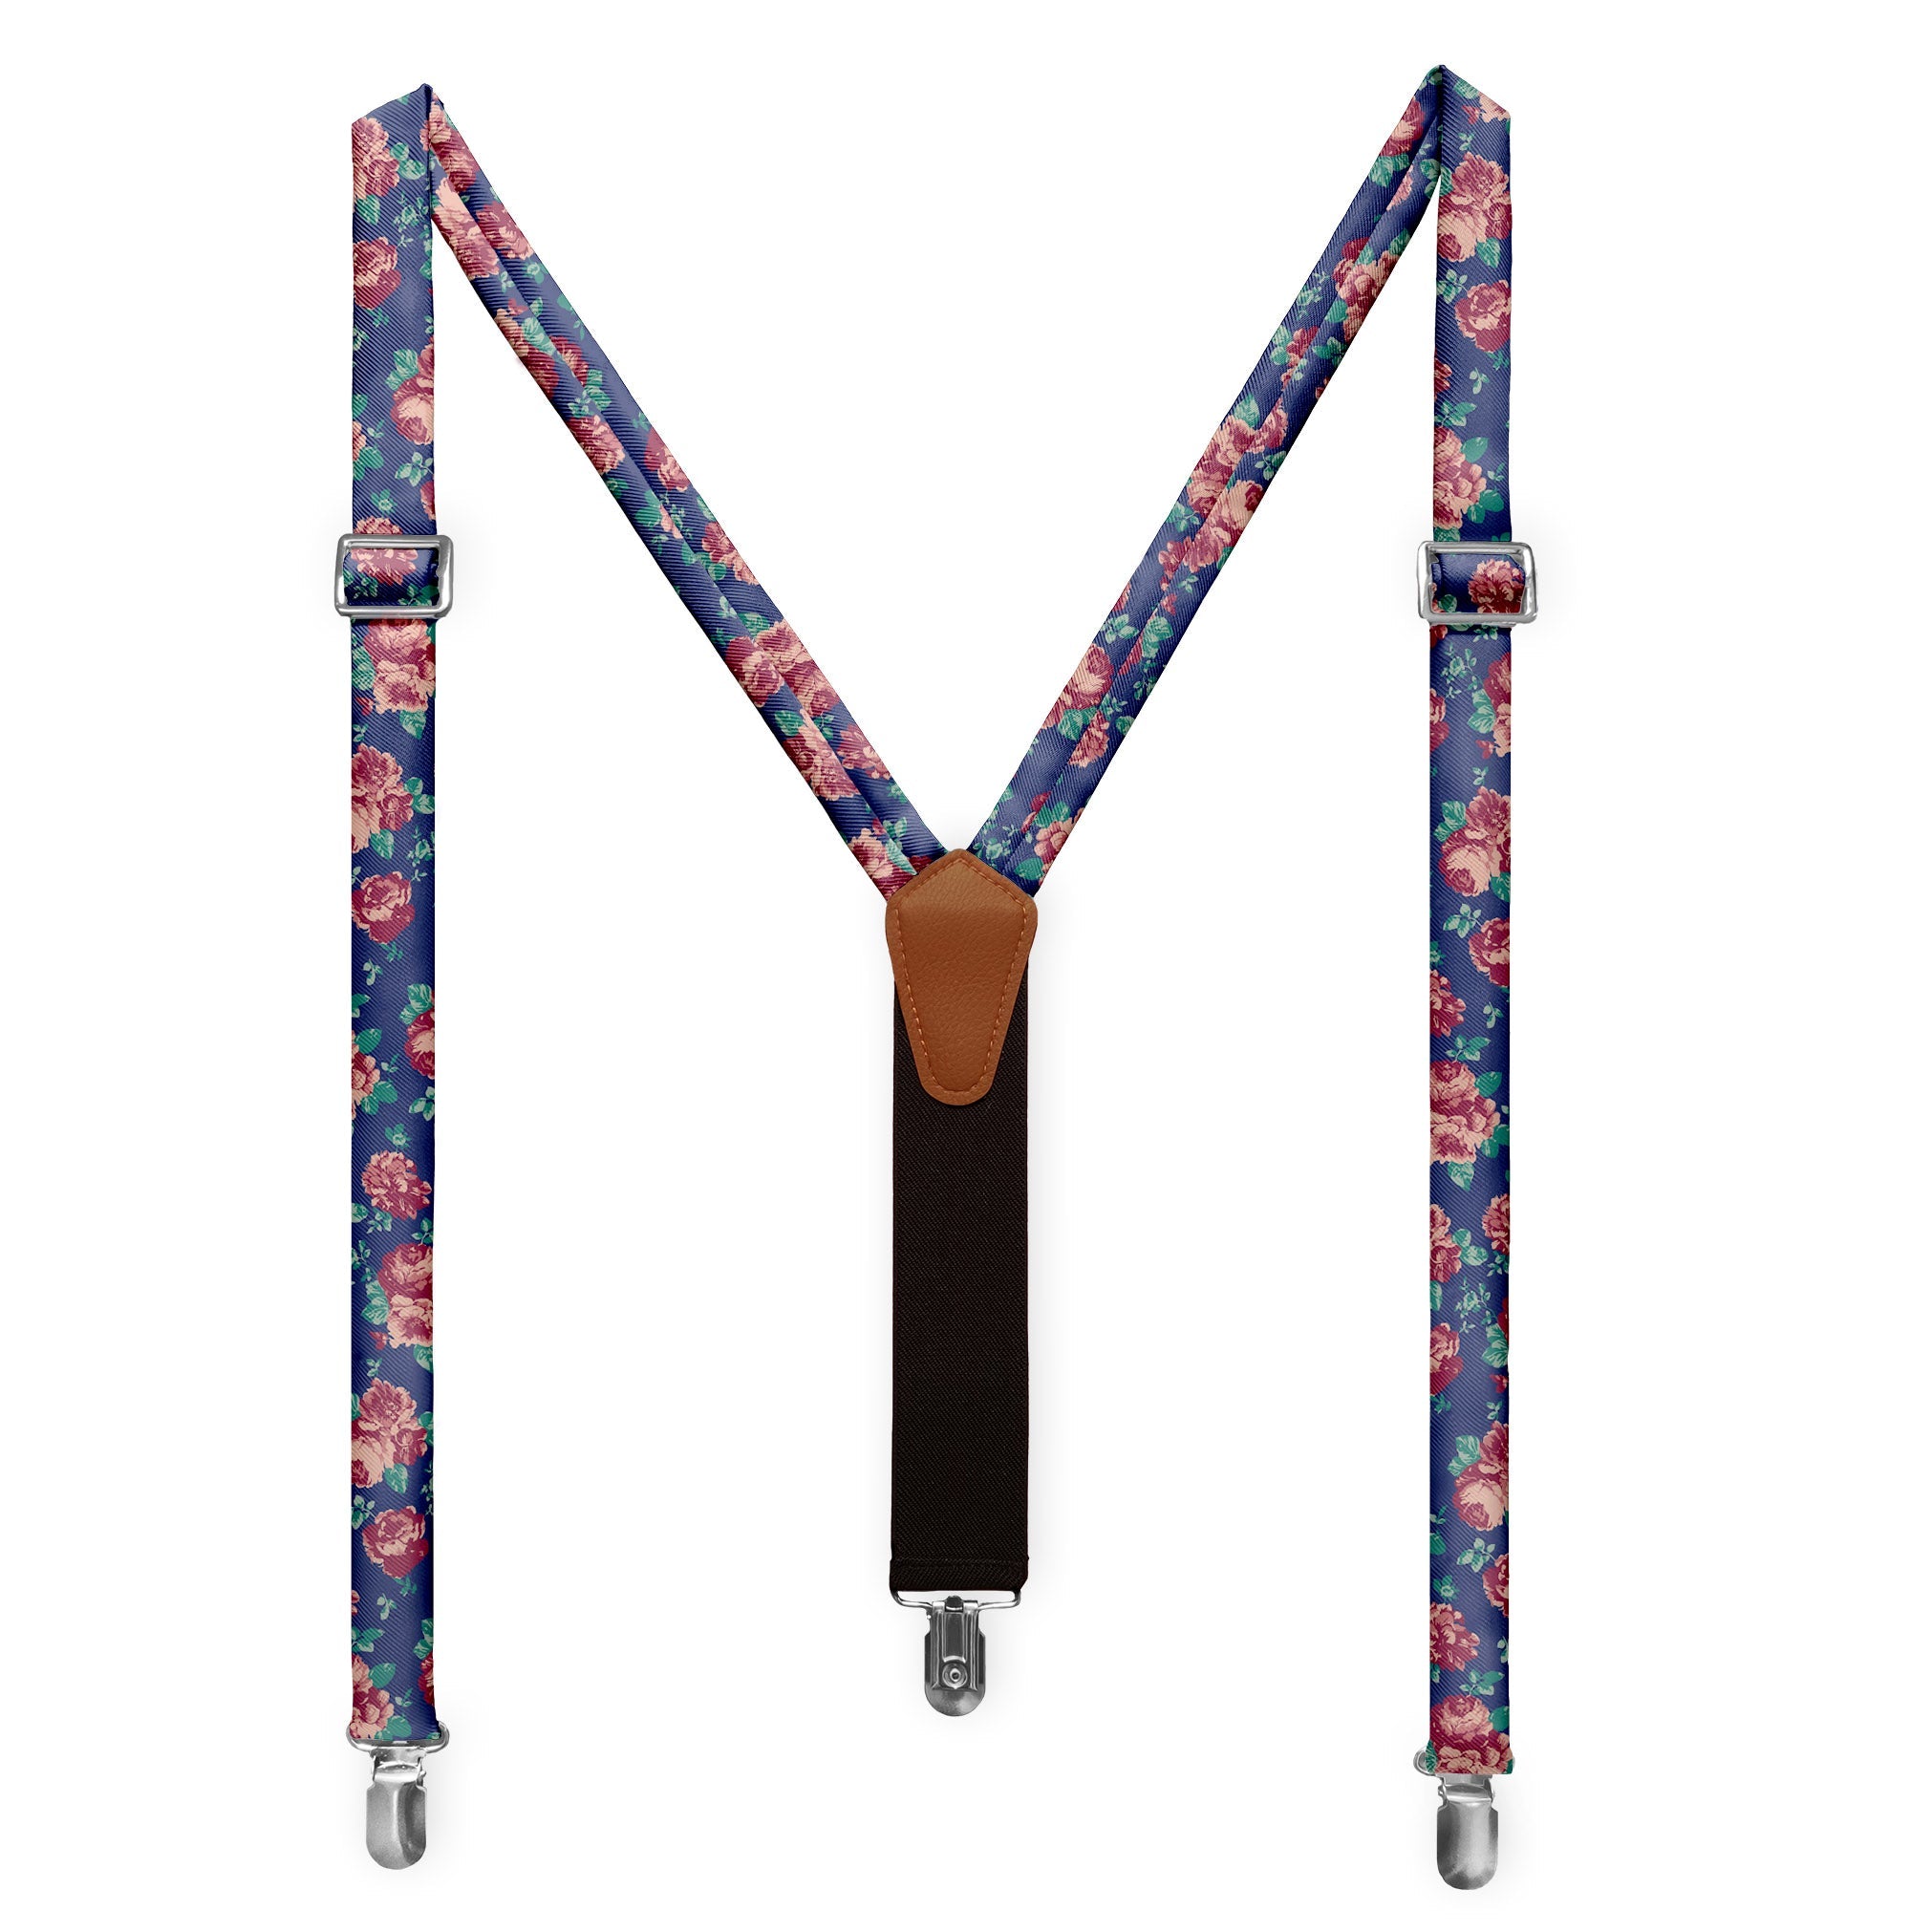 Elegant Suspenders with Floral Print